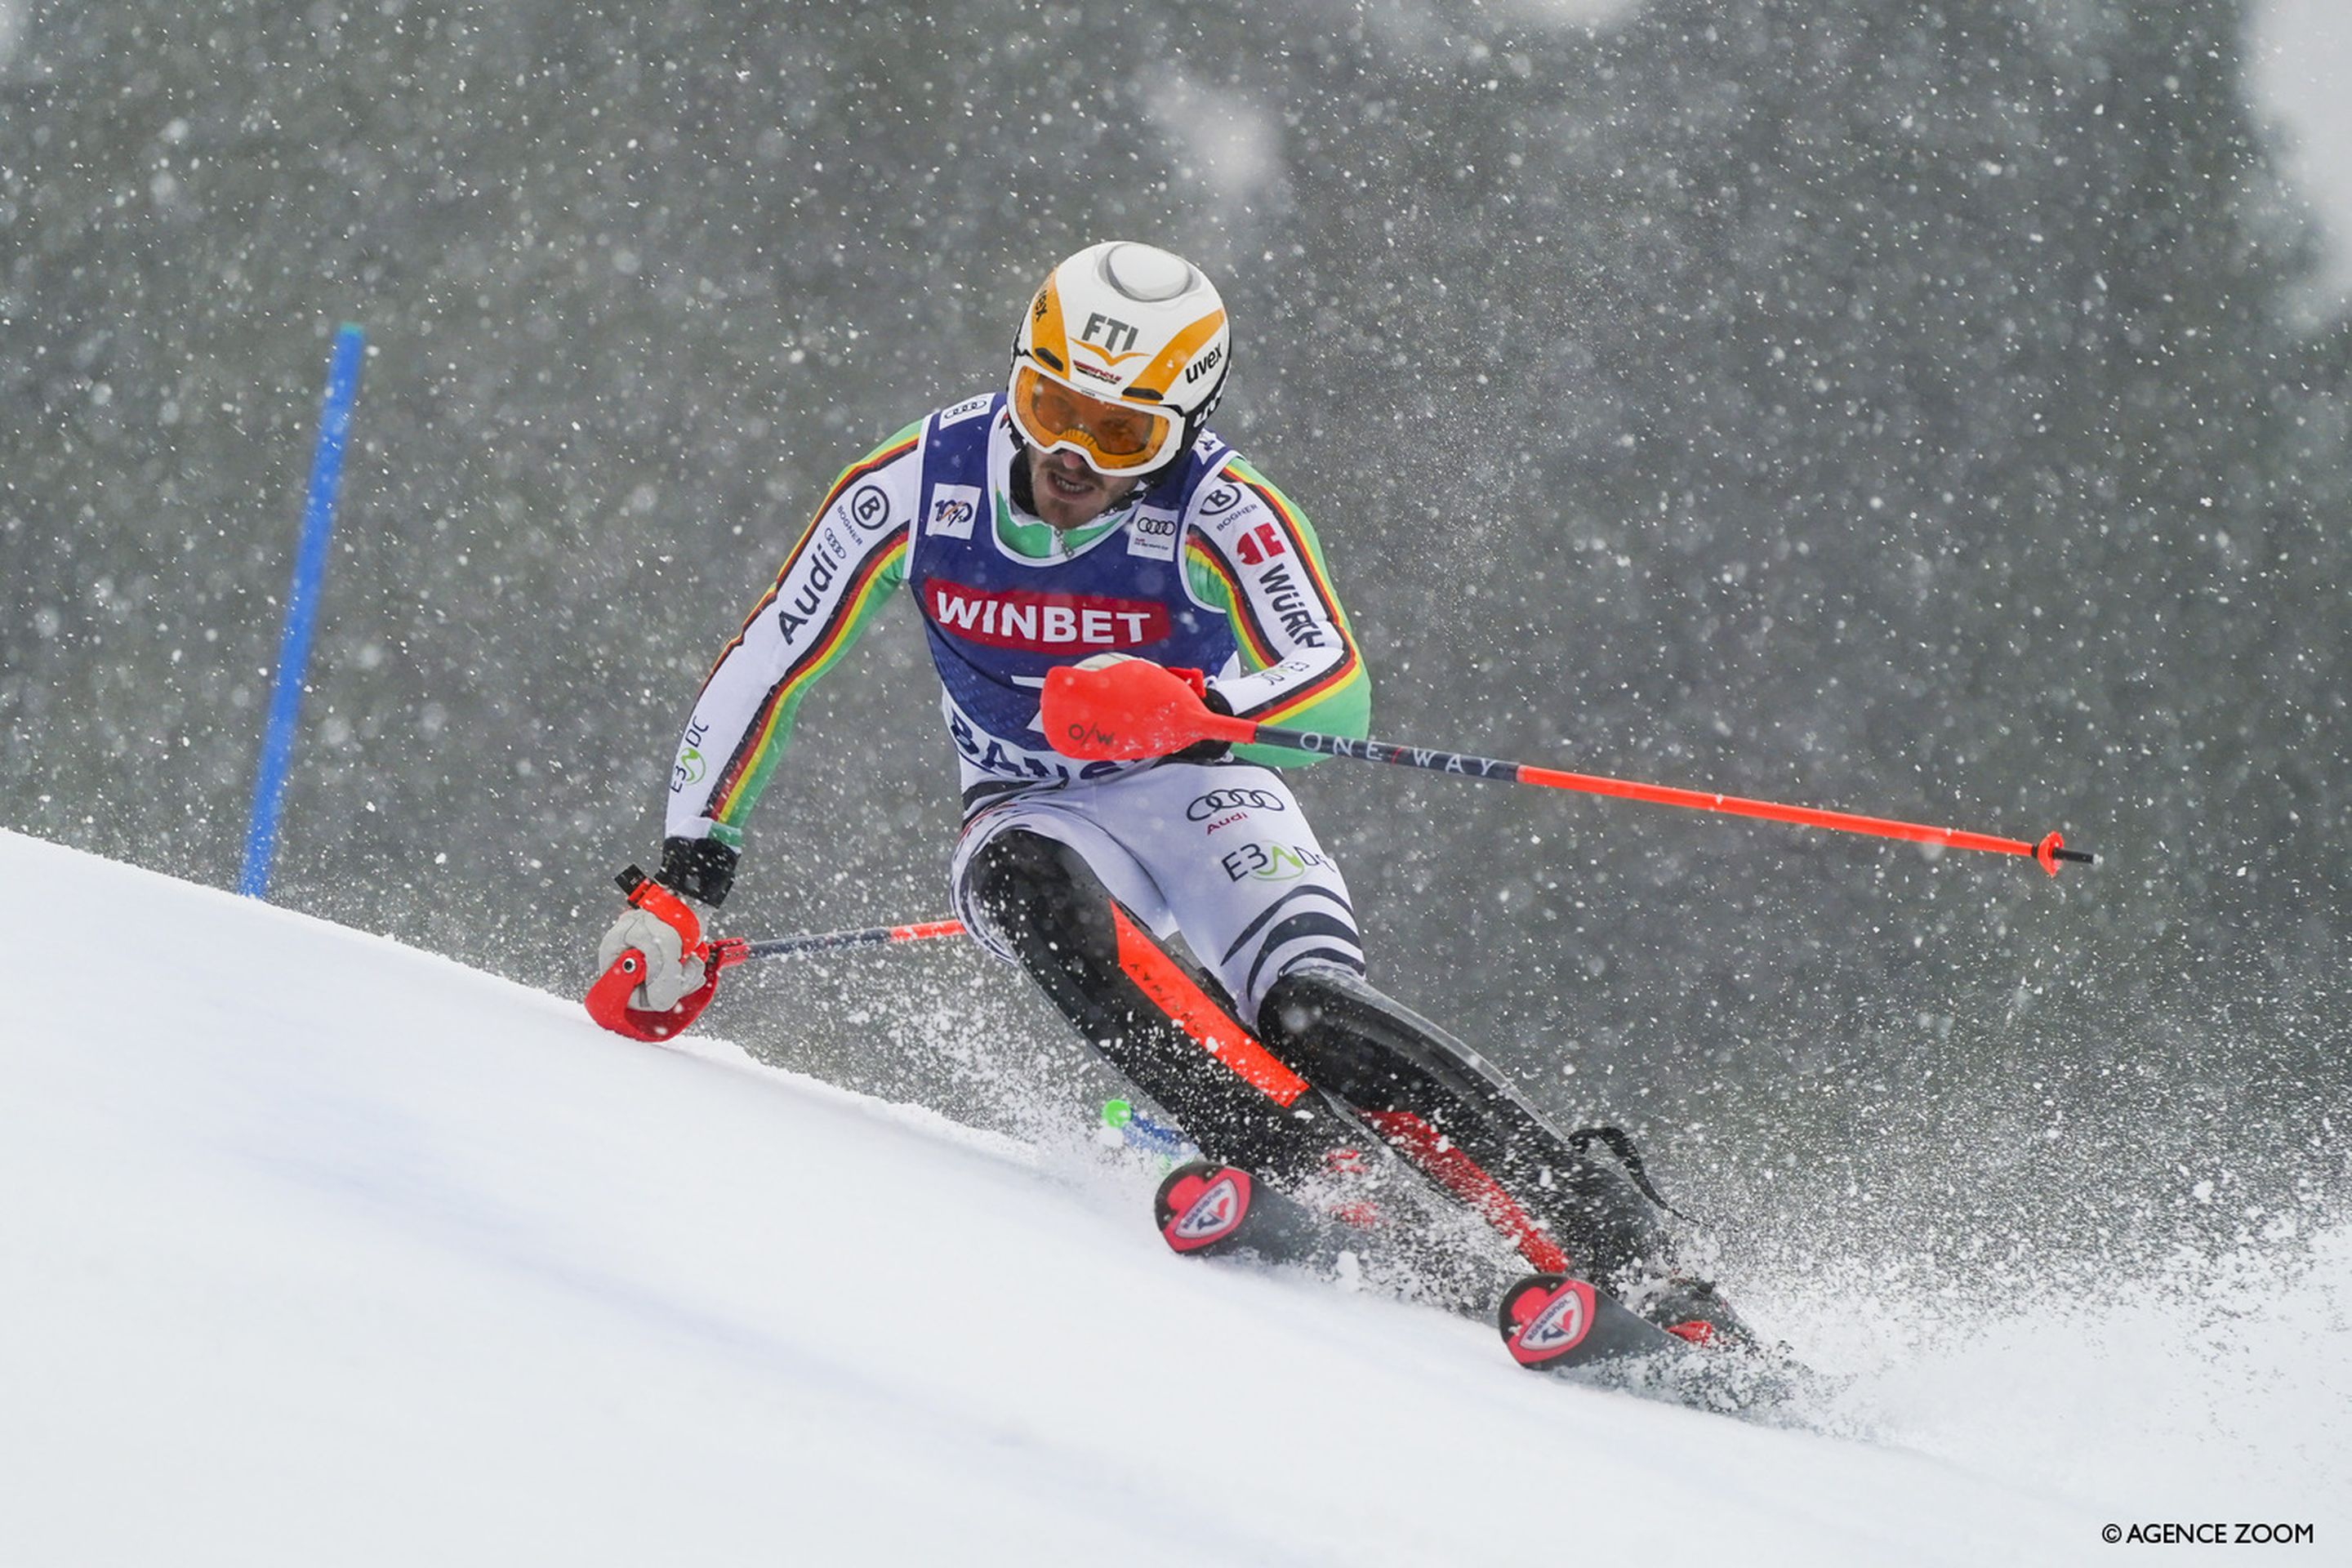 German skier Linus Strasser in action in the men's slalom